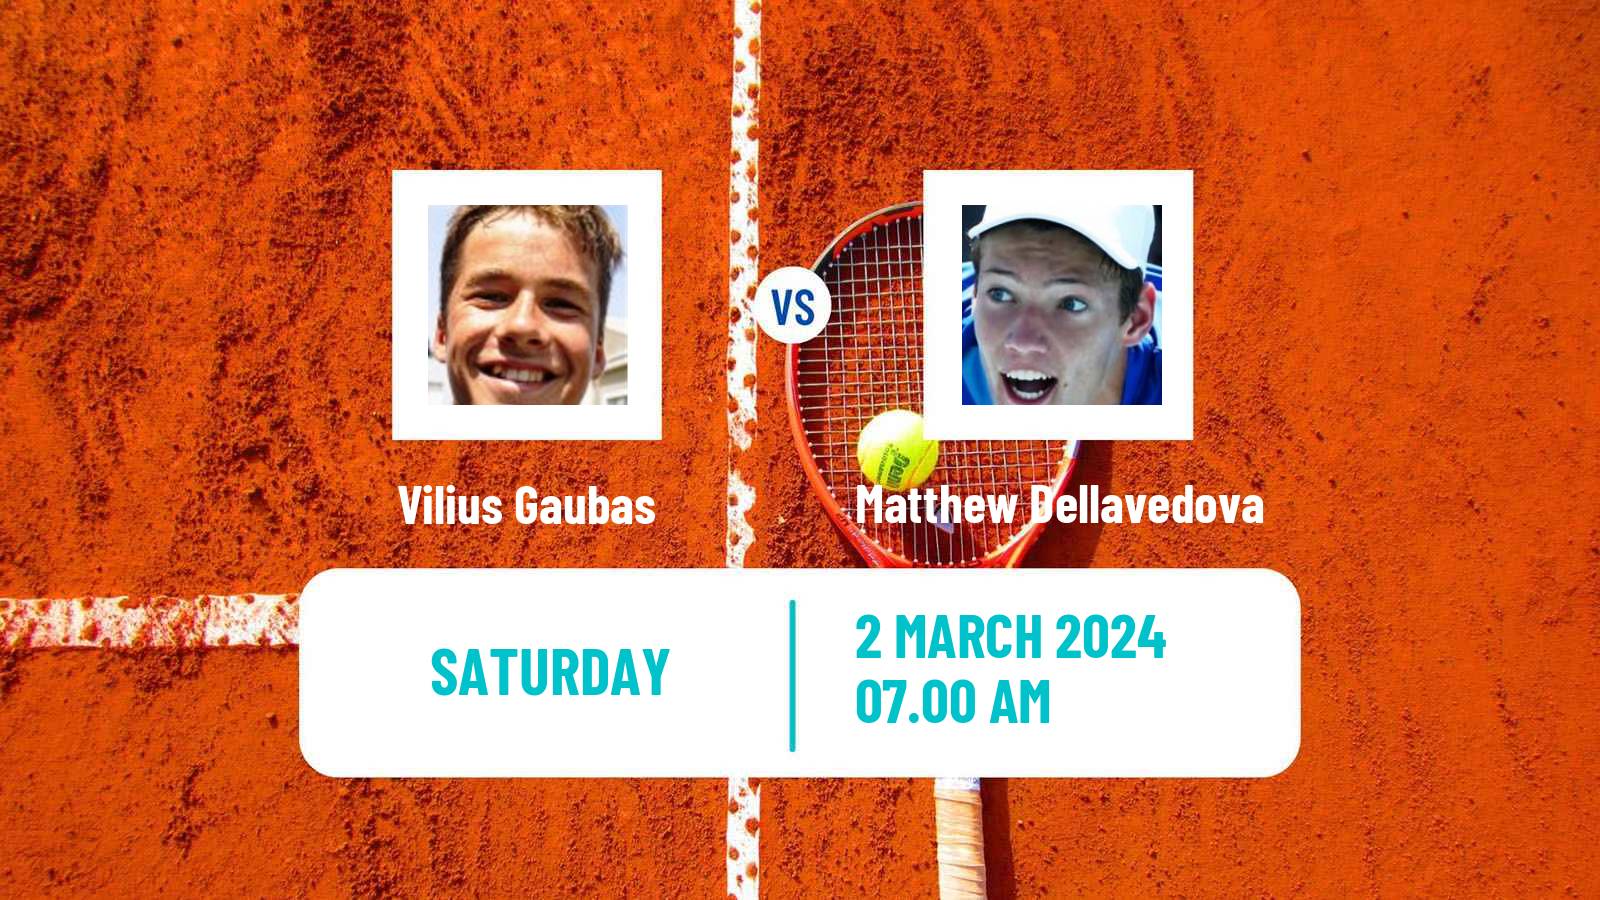 Tennis ITF M25 Faro Men Vilius Gaubas - Matthew Dellavedova